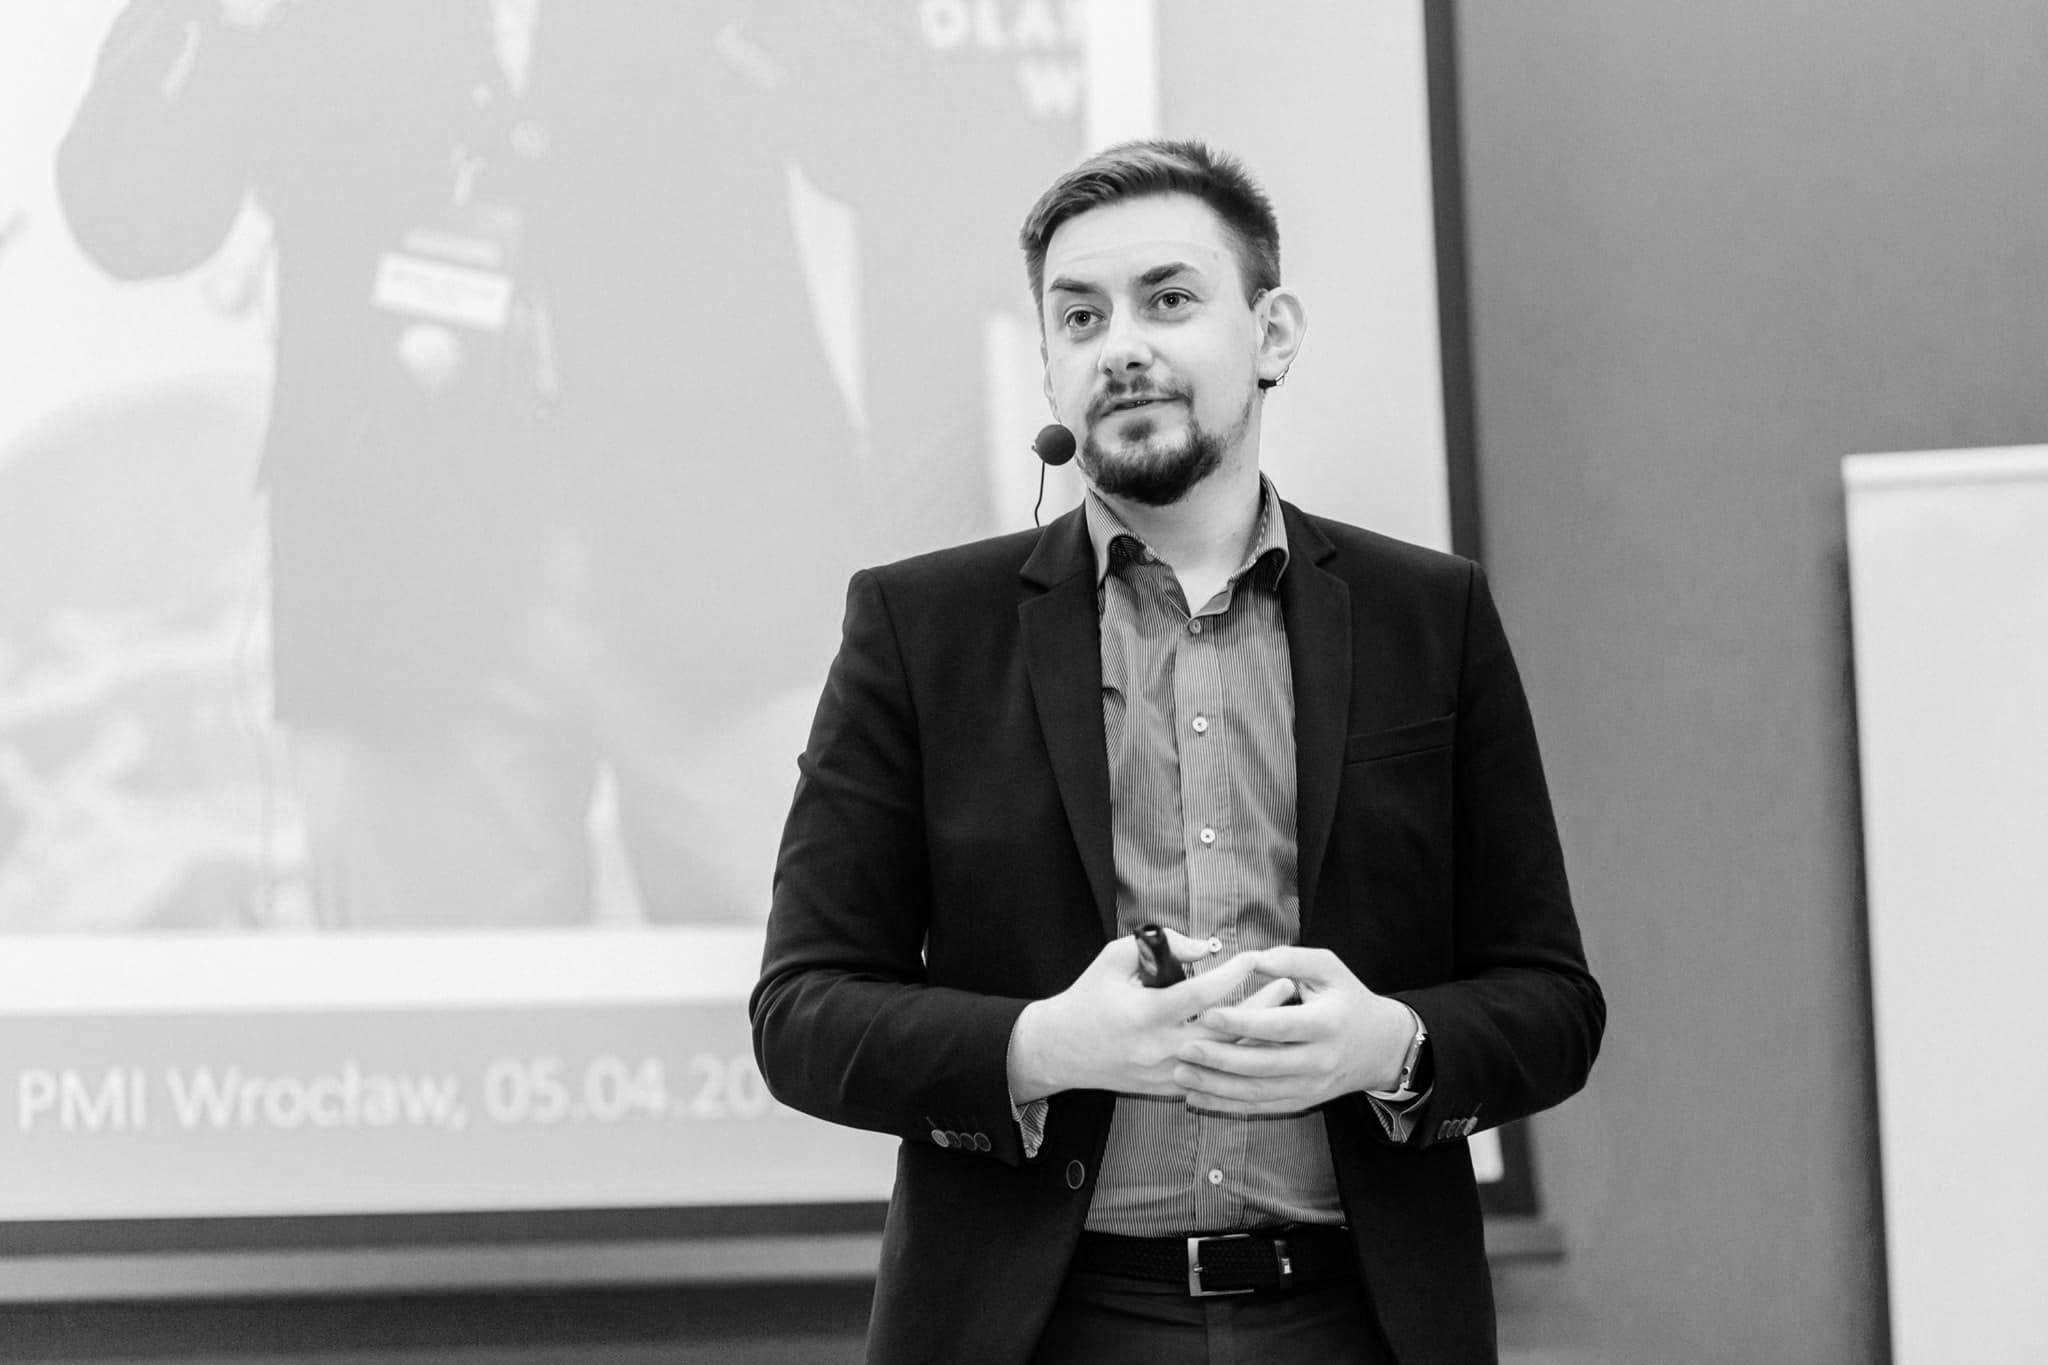 PMI Wroclaw 05.04.2017 - Miroslaw Dabrowski speaking